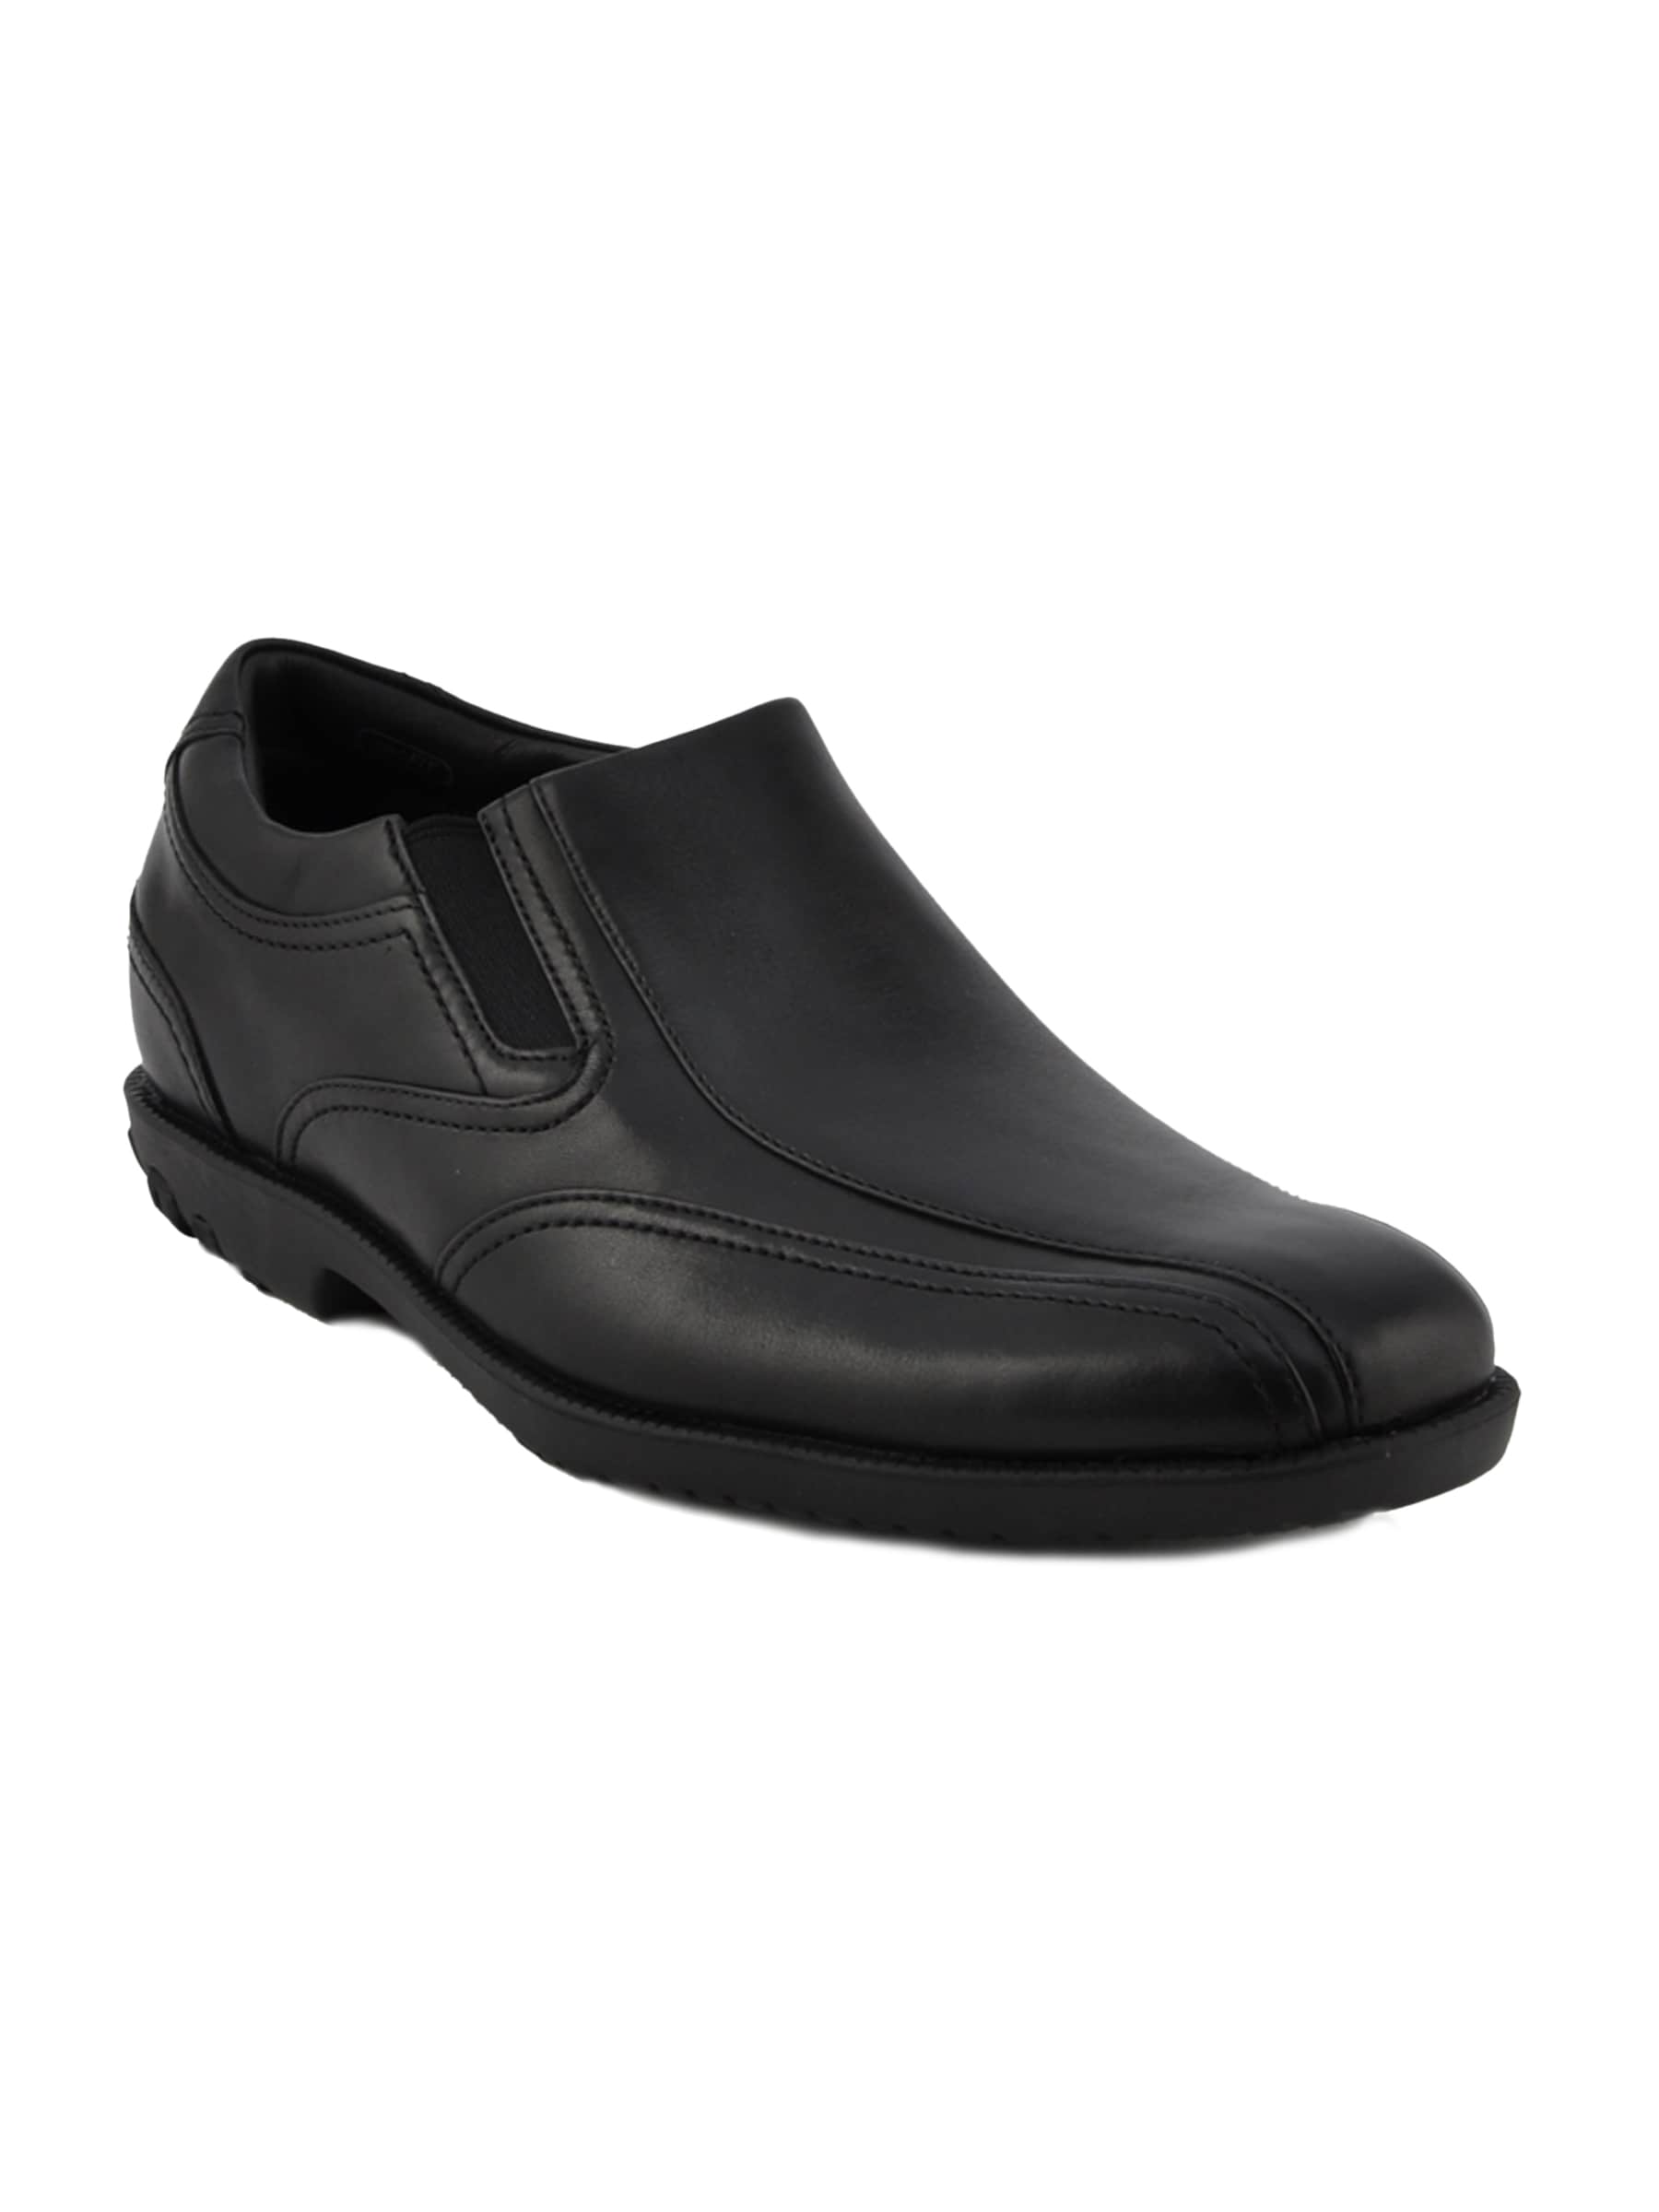 Rockport Men Drsp Slip On Black Formal Shoes